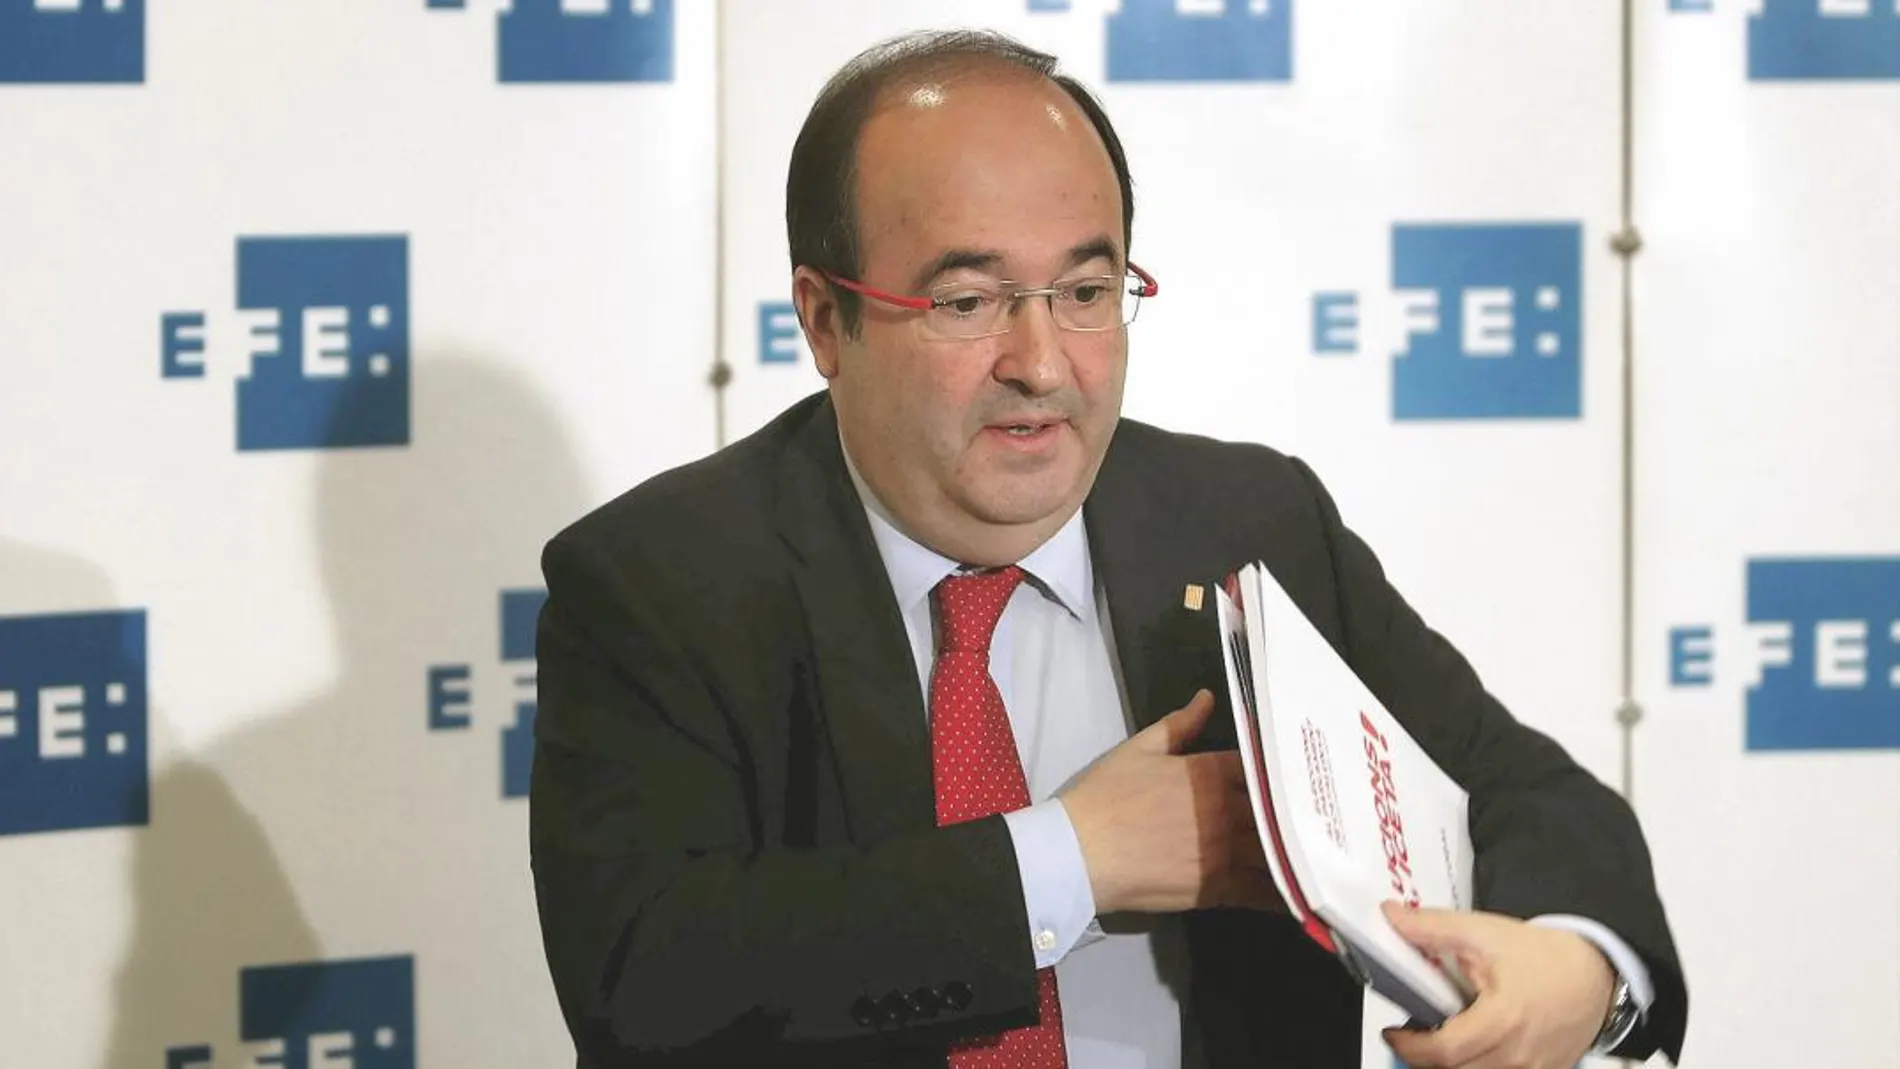 El candidato del PSC a la presidencia de la Generalitat, Miquel Iceta, durante un acto de la Agencia Efe en Barcelona.